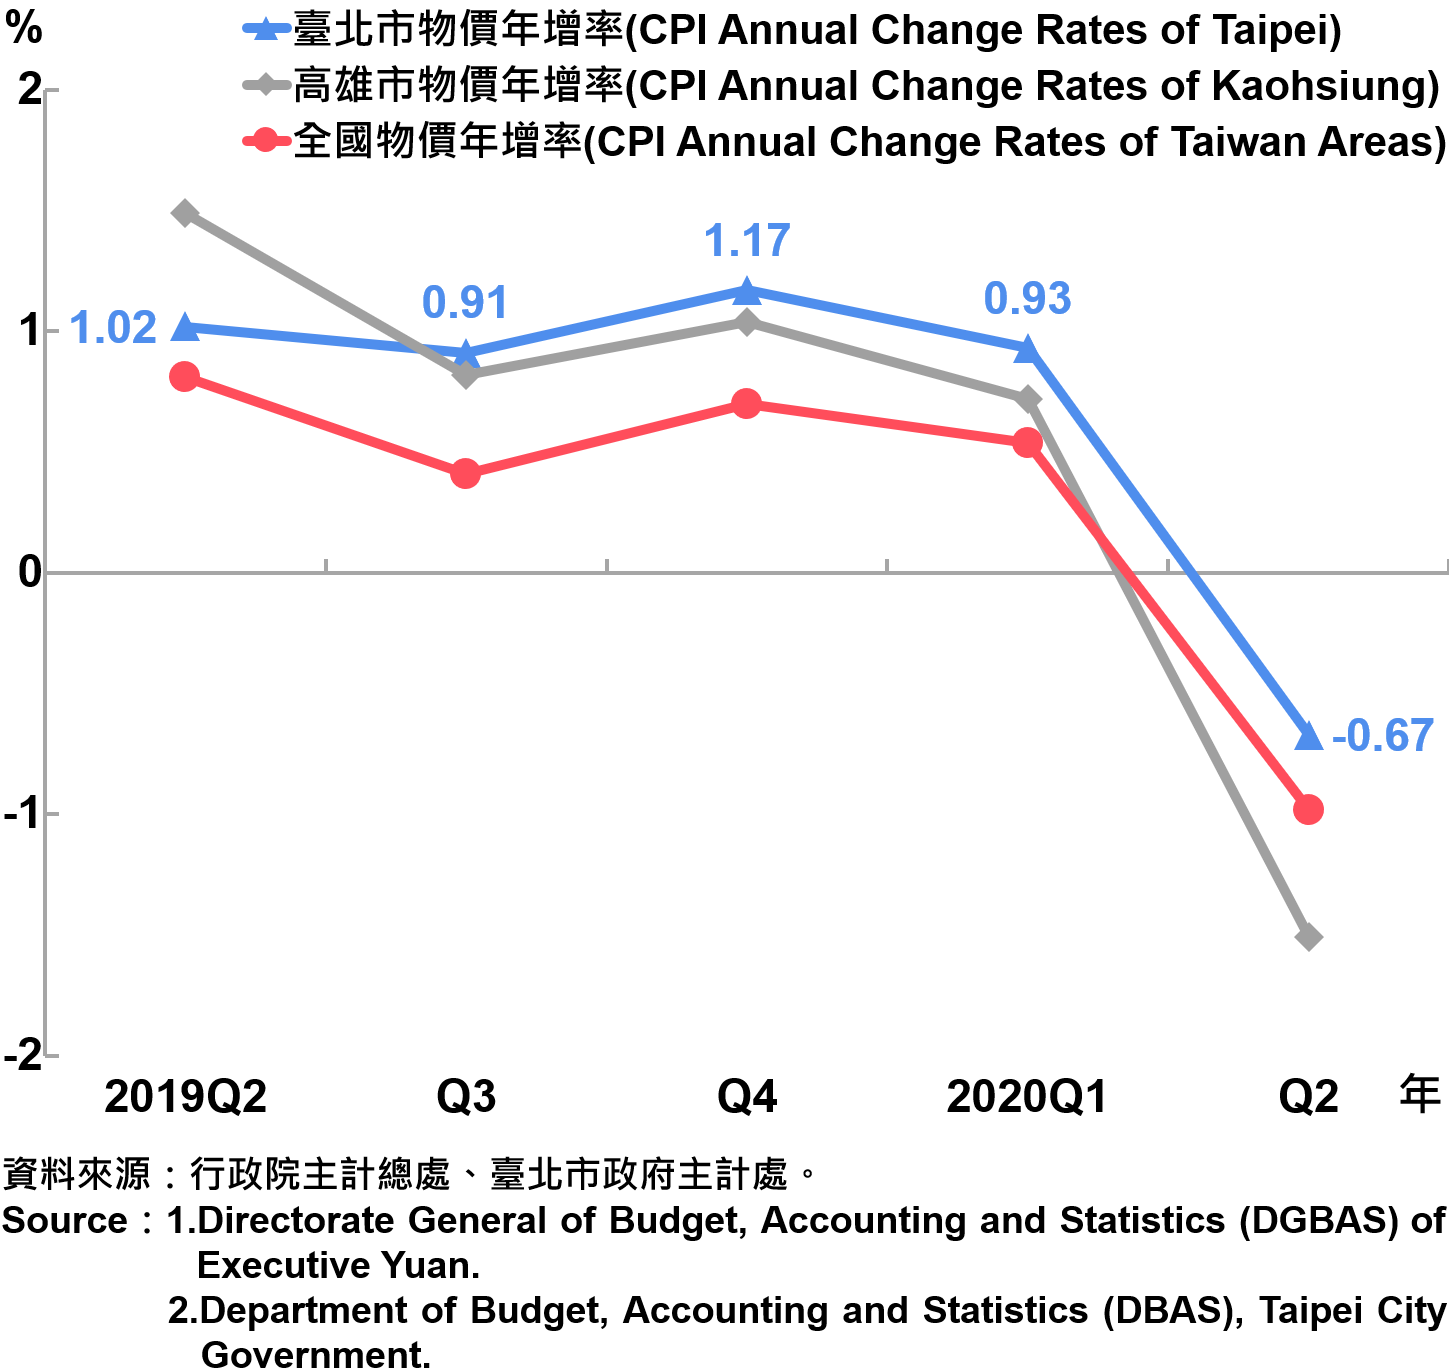 臺北市消費者物價指數（CPI）年增率—2020Q2 The Changes of CPI in Taipei City—2020Q2